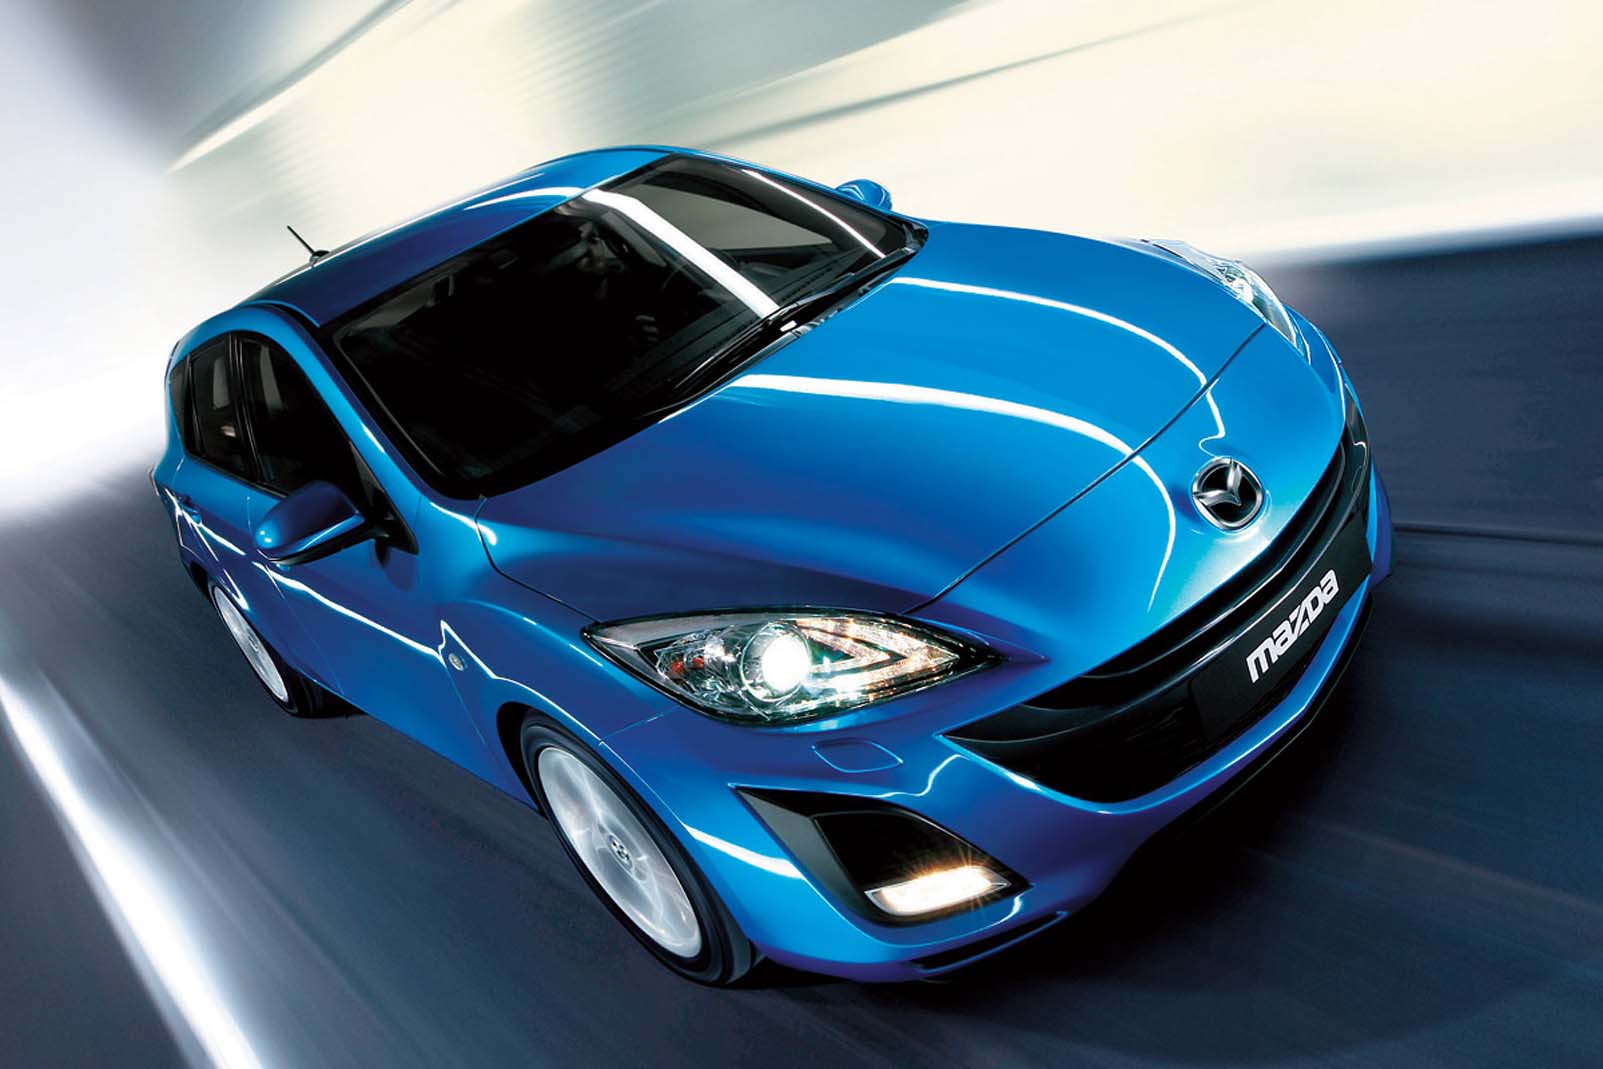 Image principale de l'actu: Mazda 3 version 2009 